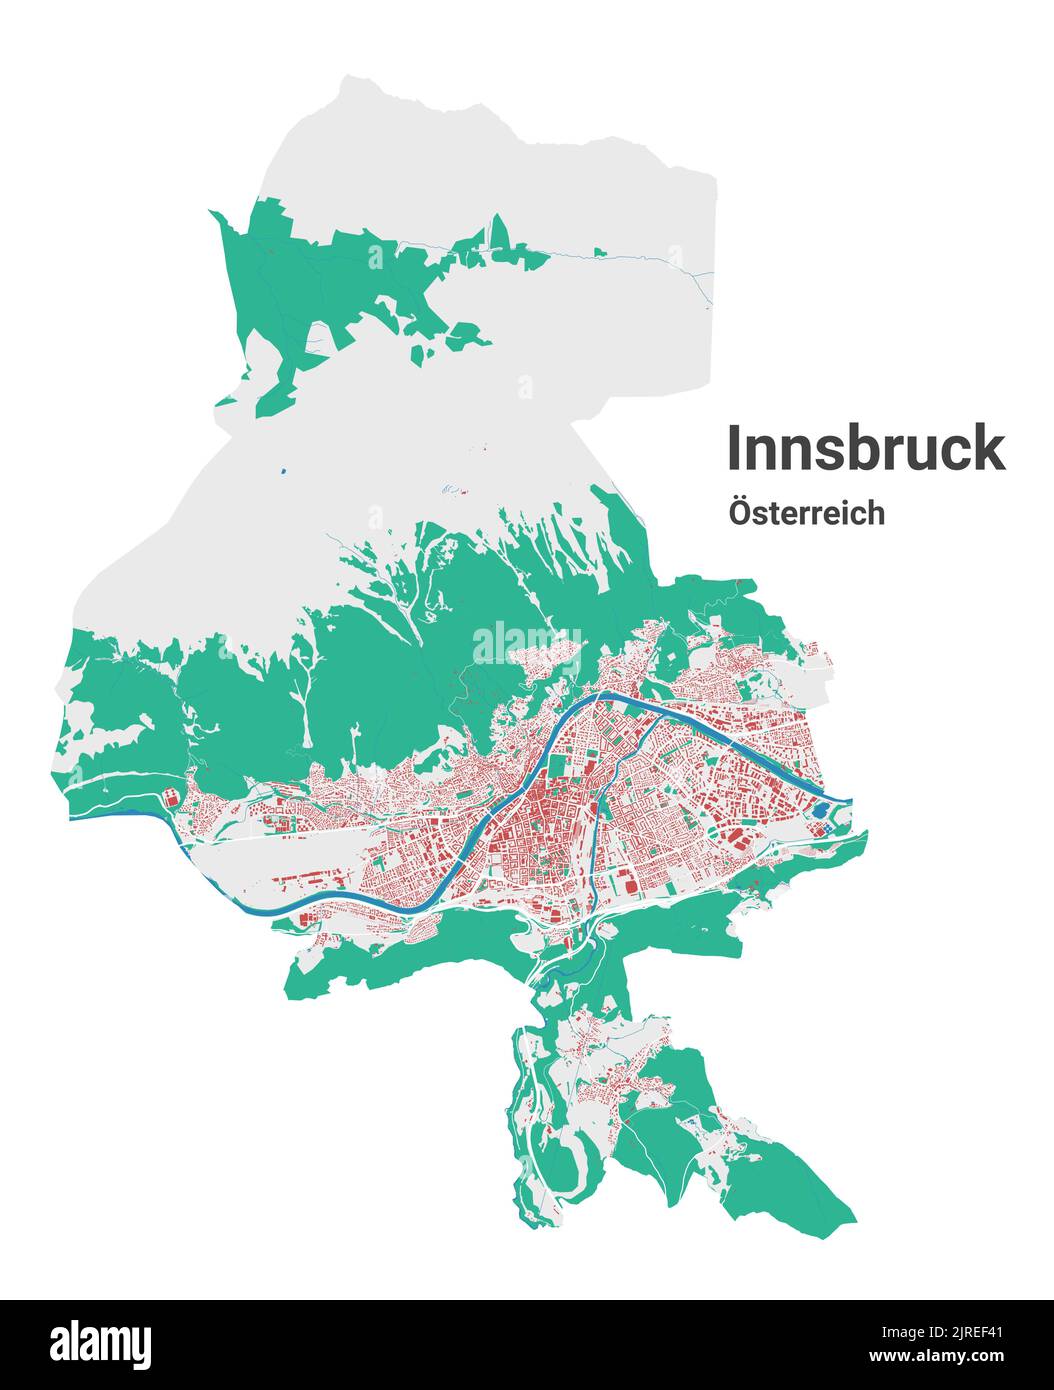 Mappa vettoriale di Innsbruck. Mappa dettagliata dell'area amministrativa della città di Innsbruck. Panorama urbano. Road Map con edifici, acqua, foresta. Decorazioni turistiche Illustrazione Vettoriale